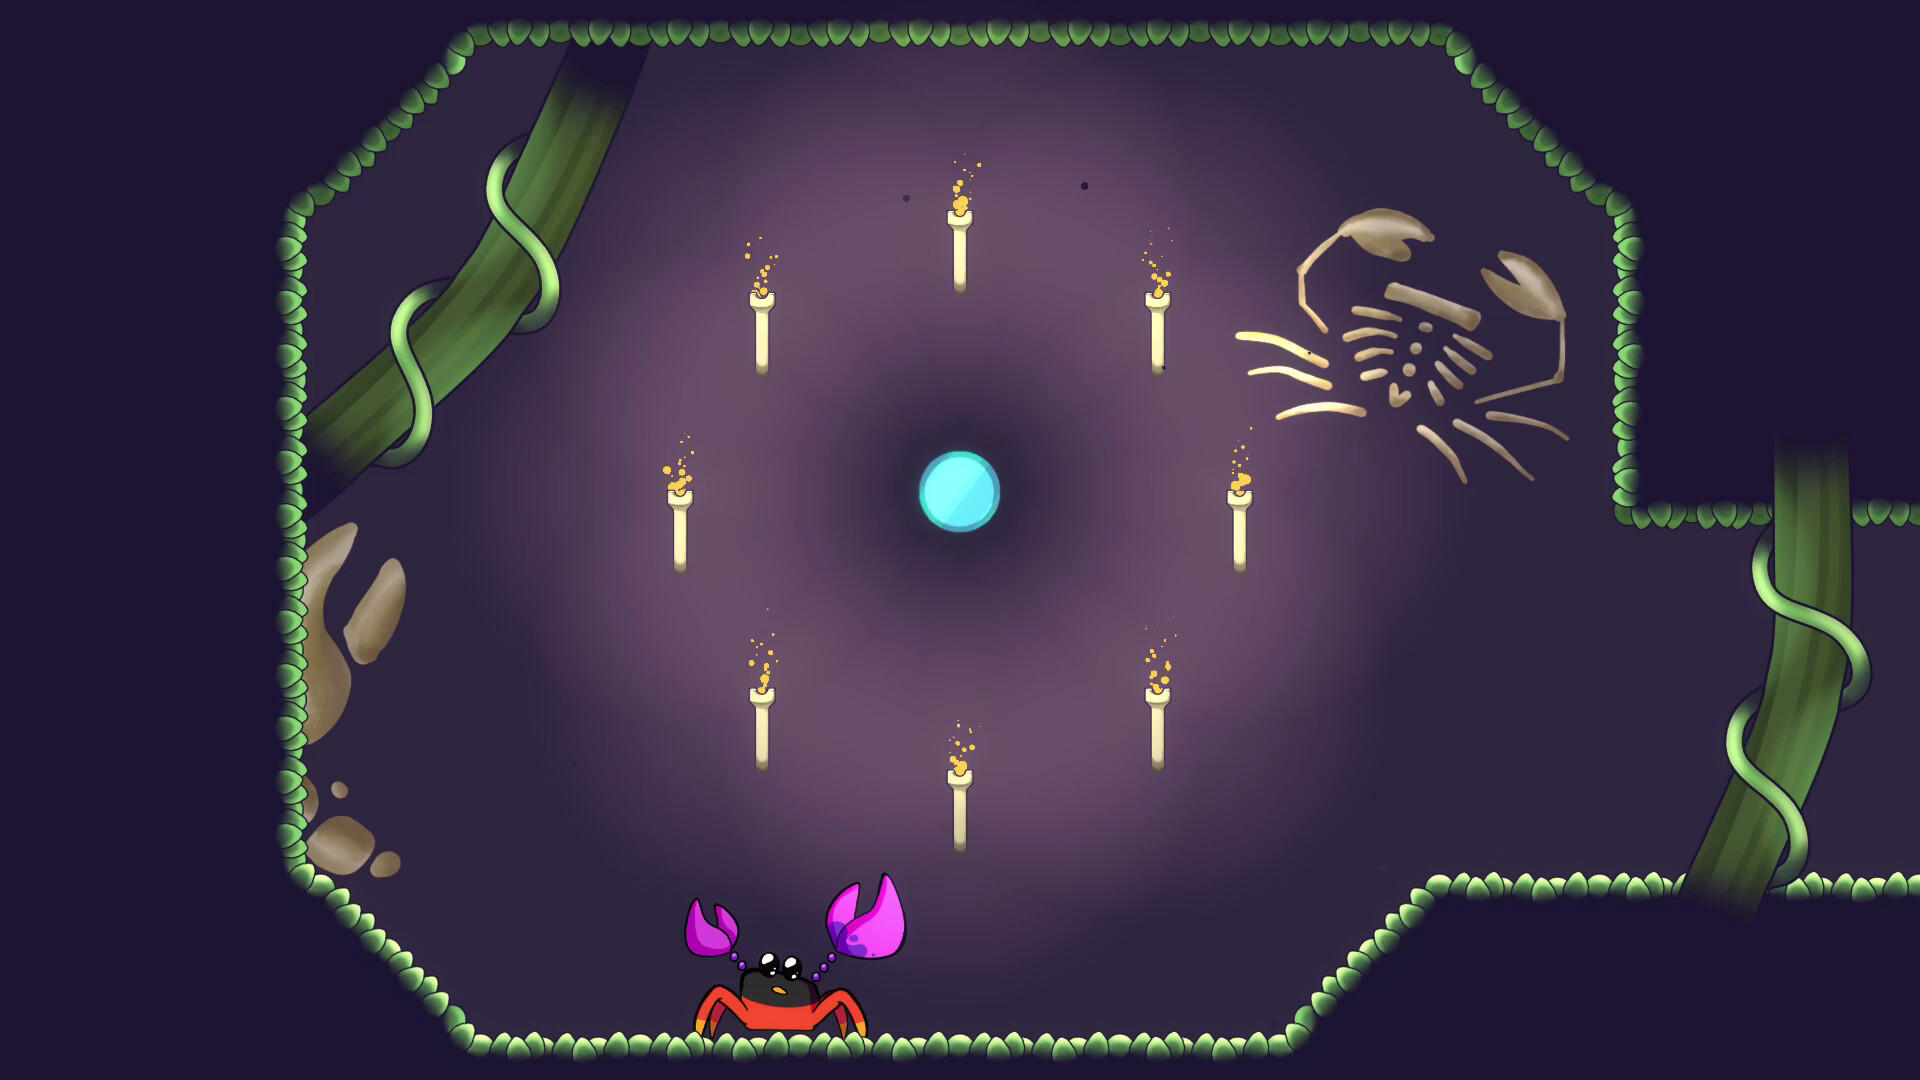 Crabling screenshot game